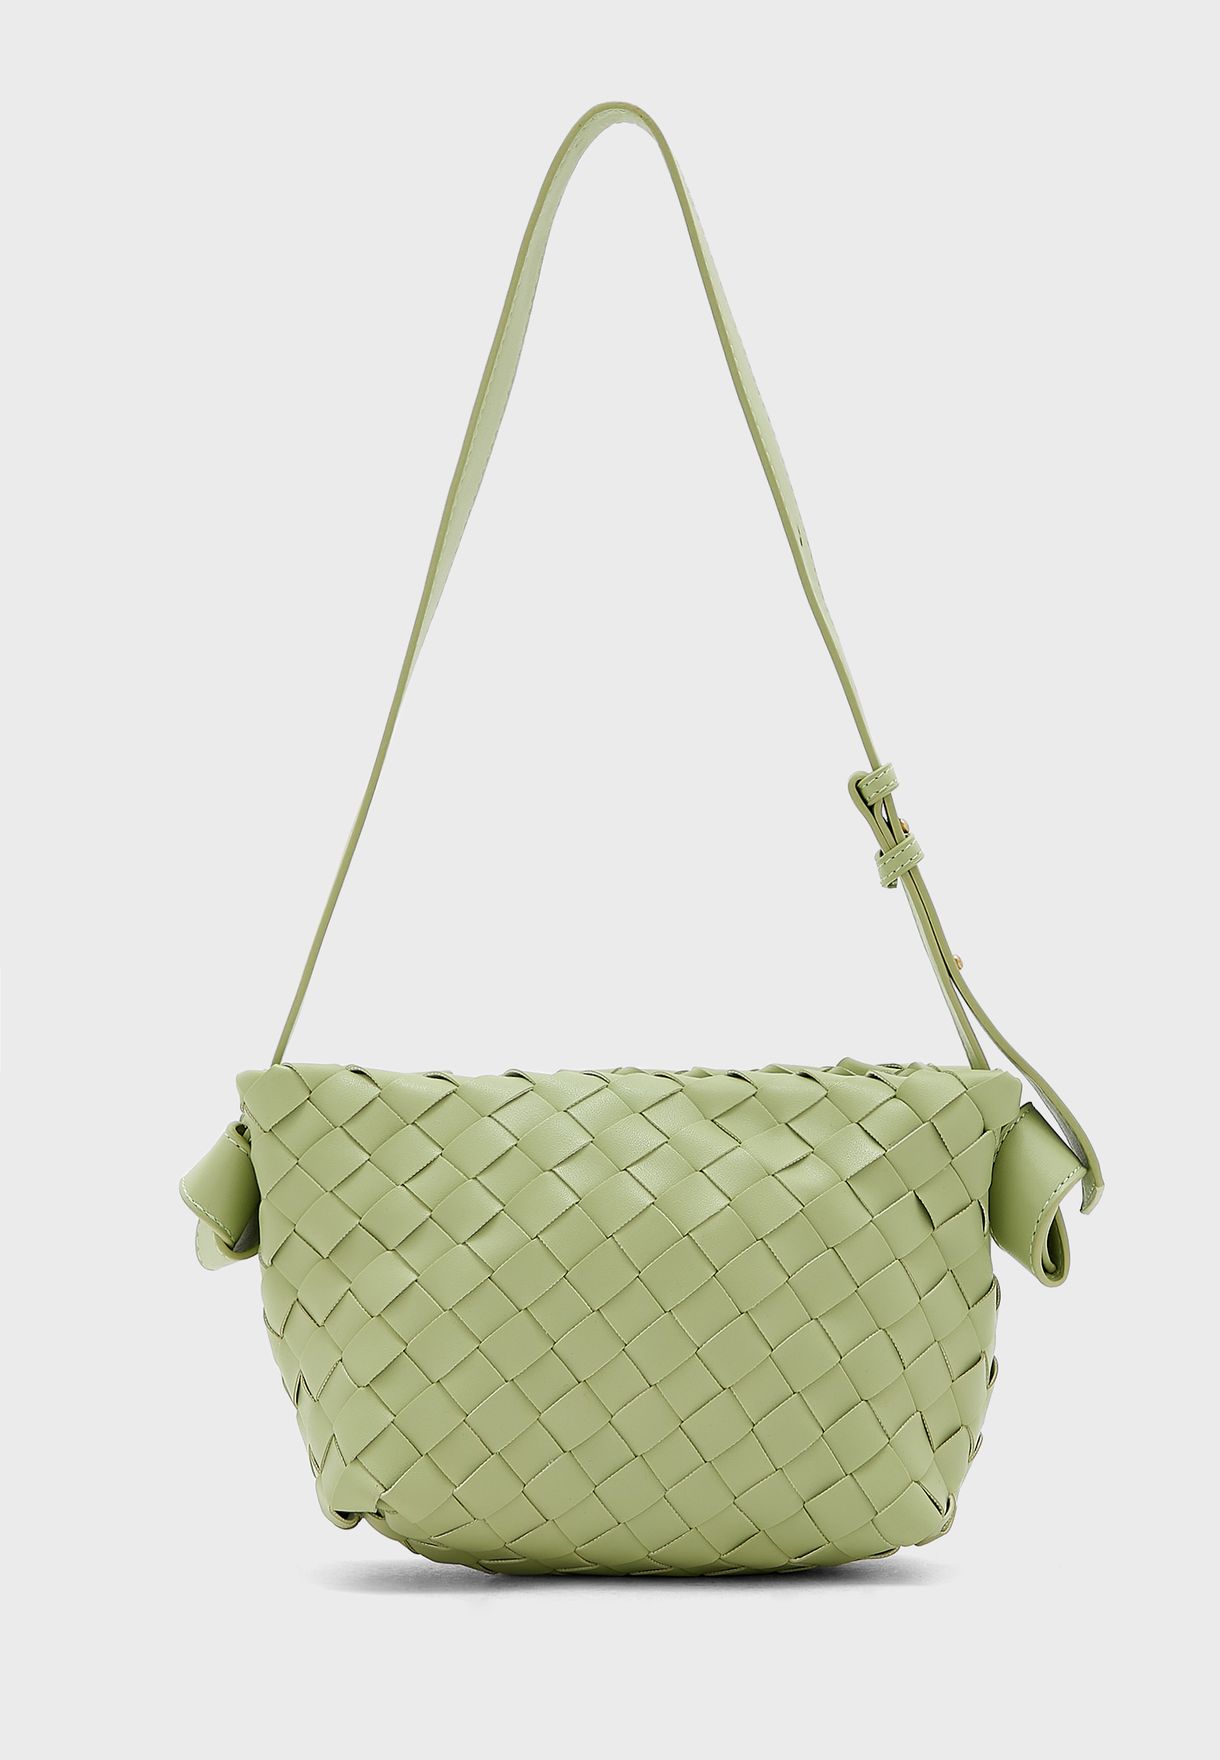 Weave Handbag With Shoulder Strap